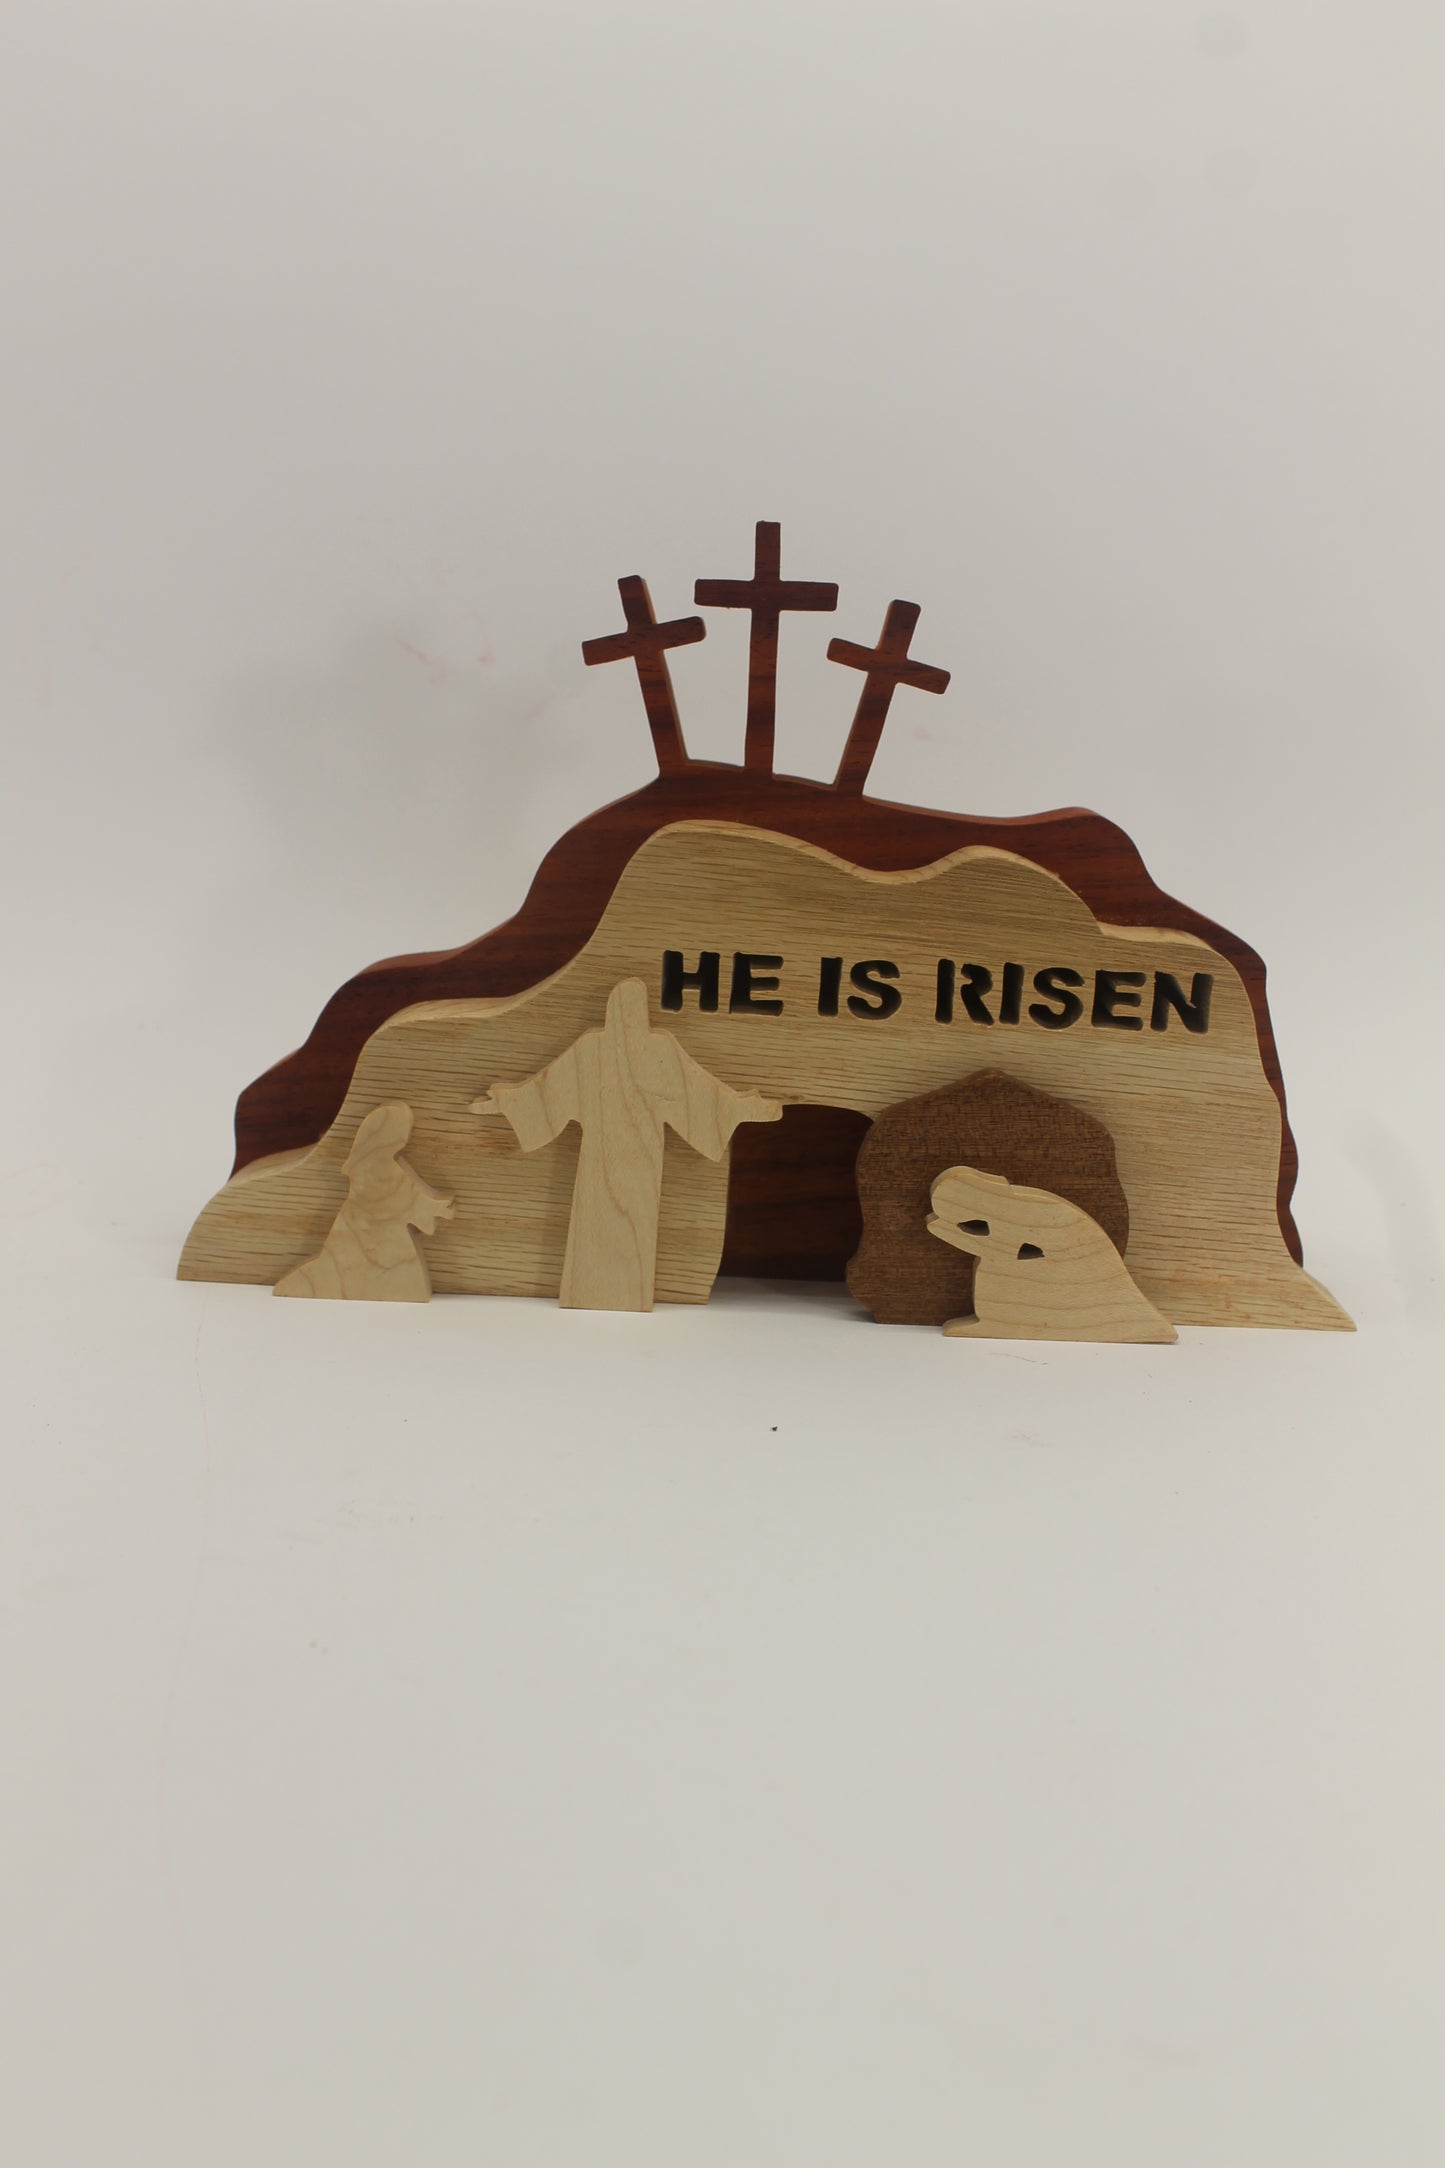 "He is risen" resurrection scene